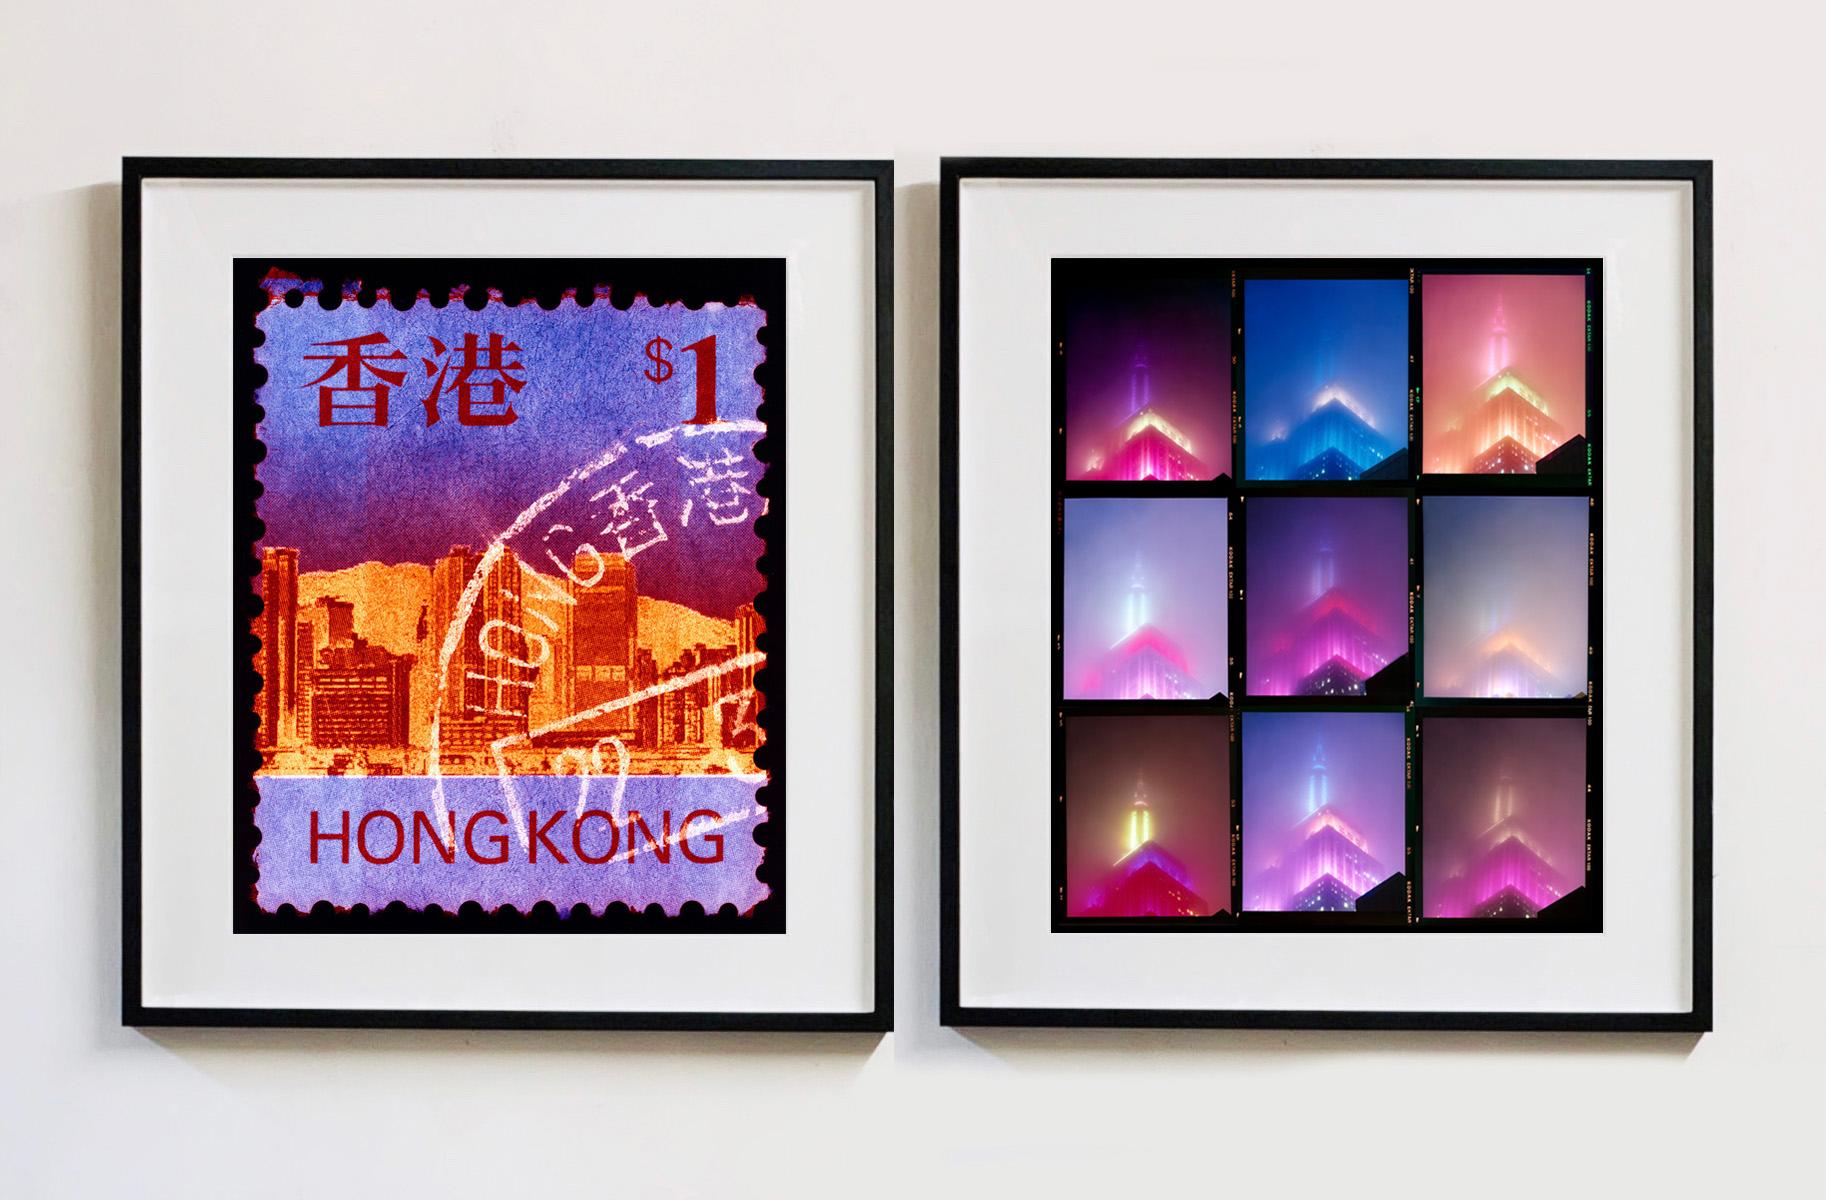 HK$1, aus der Heidler & Heeps Stamp Collection'S Hong Kong Serie. Der feine, detaillierte Wandteppich der originalen kleinen Briefmarke wurde zum Leben erweckt und durch den Frankierstempel und das spezielle Dunkelkammerverfahren von Heidler & Heeps